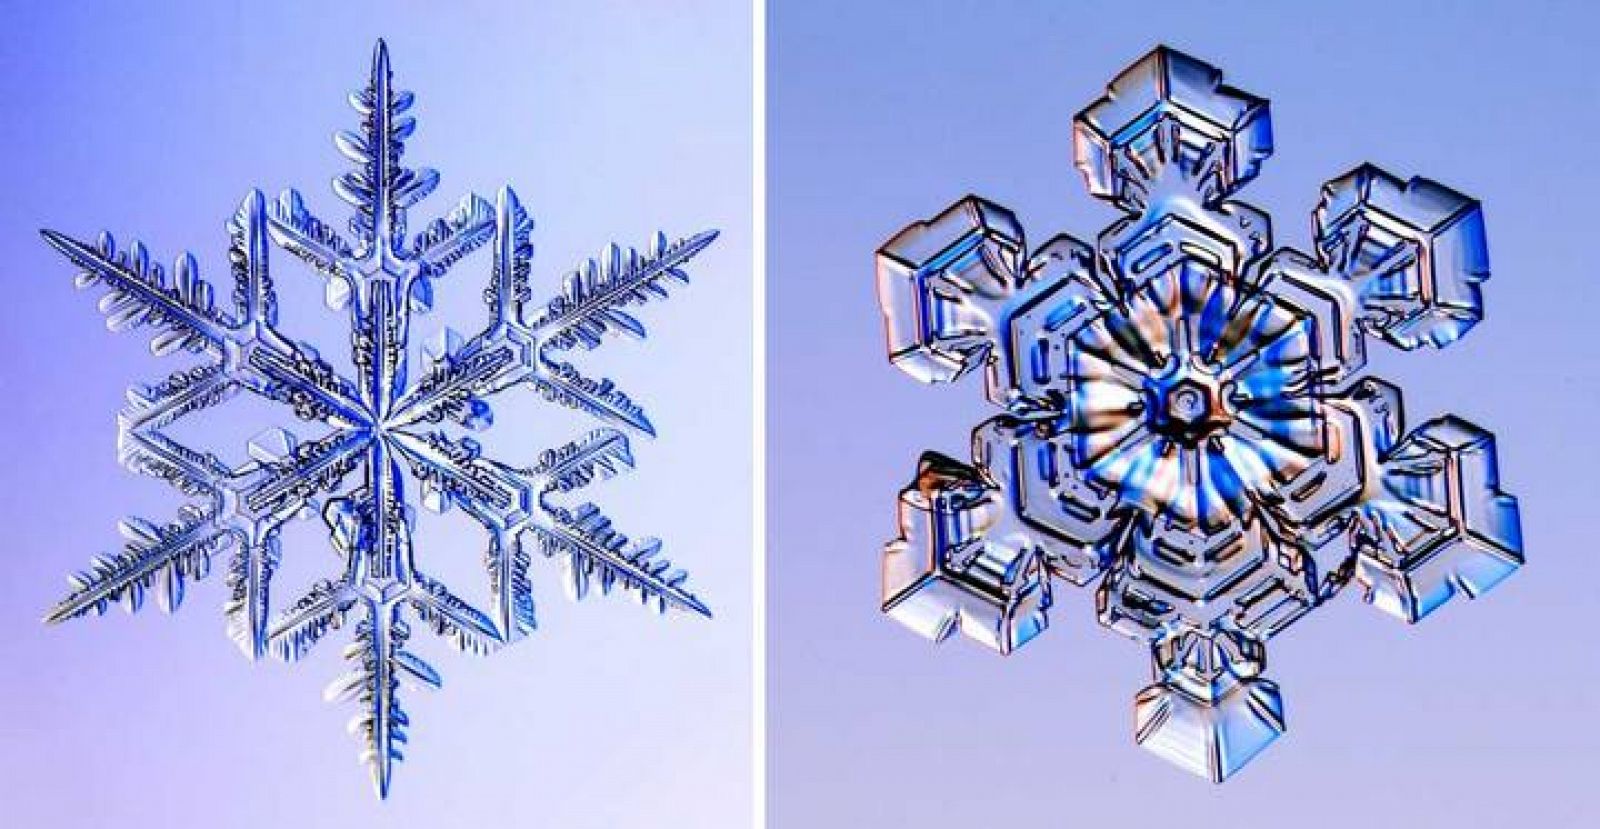  Fotografías de dos copos de nieve reales